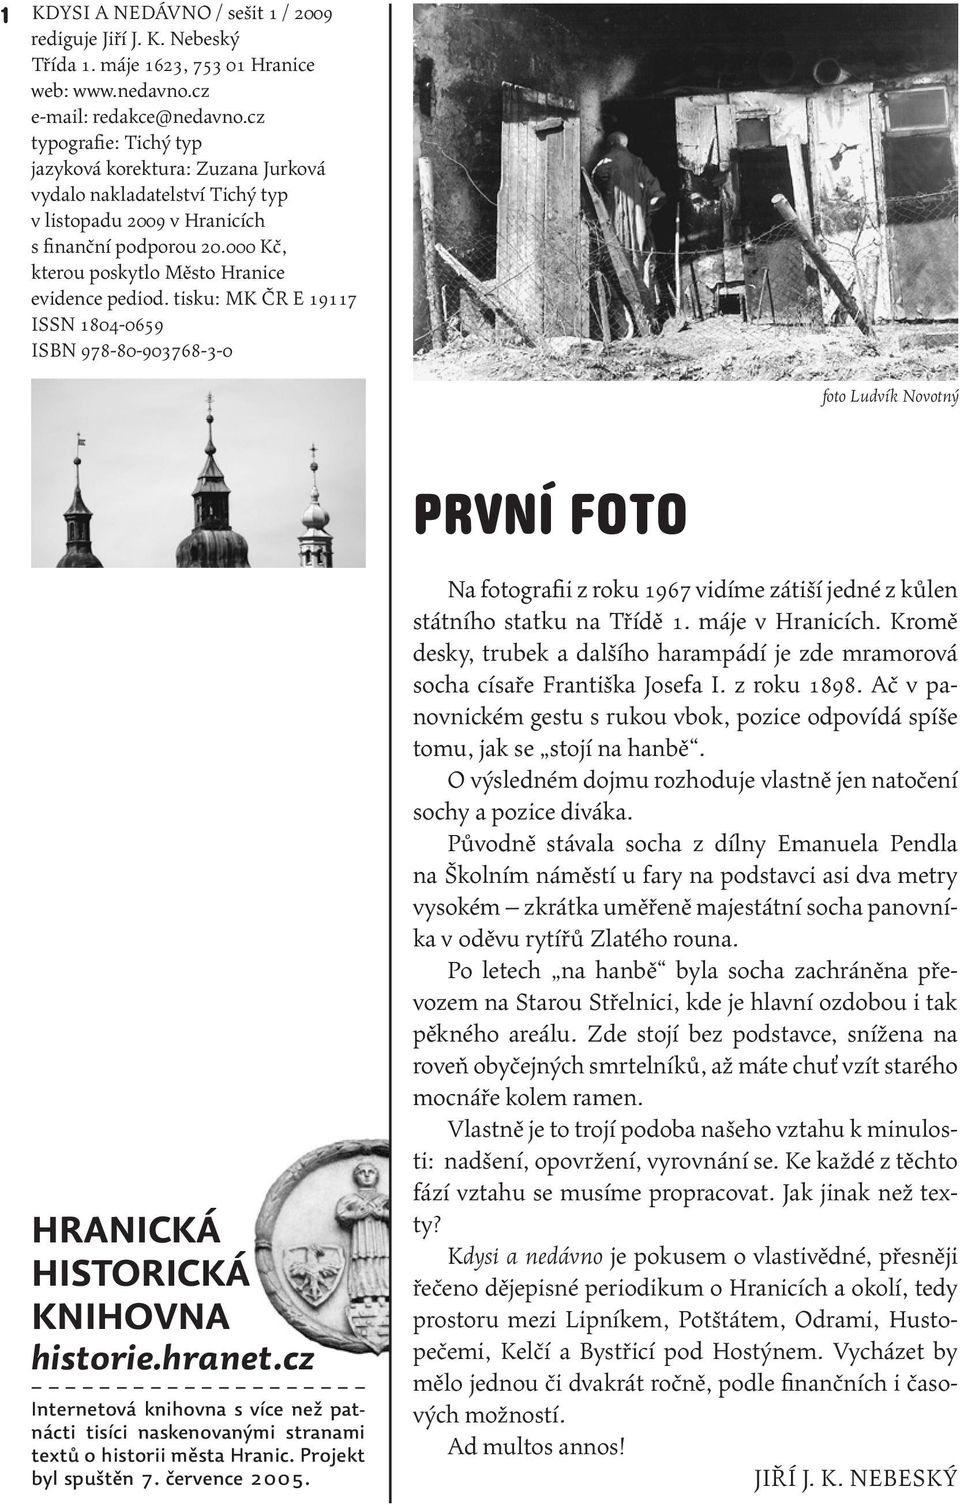 tisku: MK ČR E 19117 ISSN 1804-0659 ISBN 978-80-903768-3-0 foto Ludvík Novotný první foto hranická historická knihovna historie.hranet.